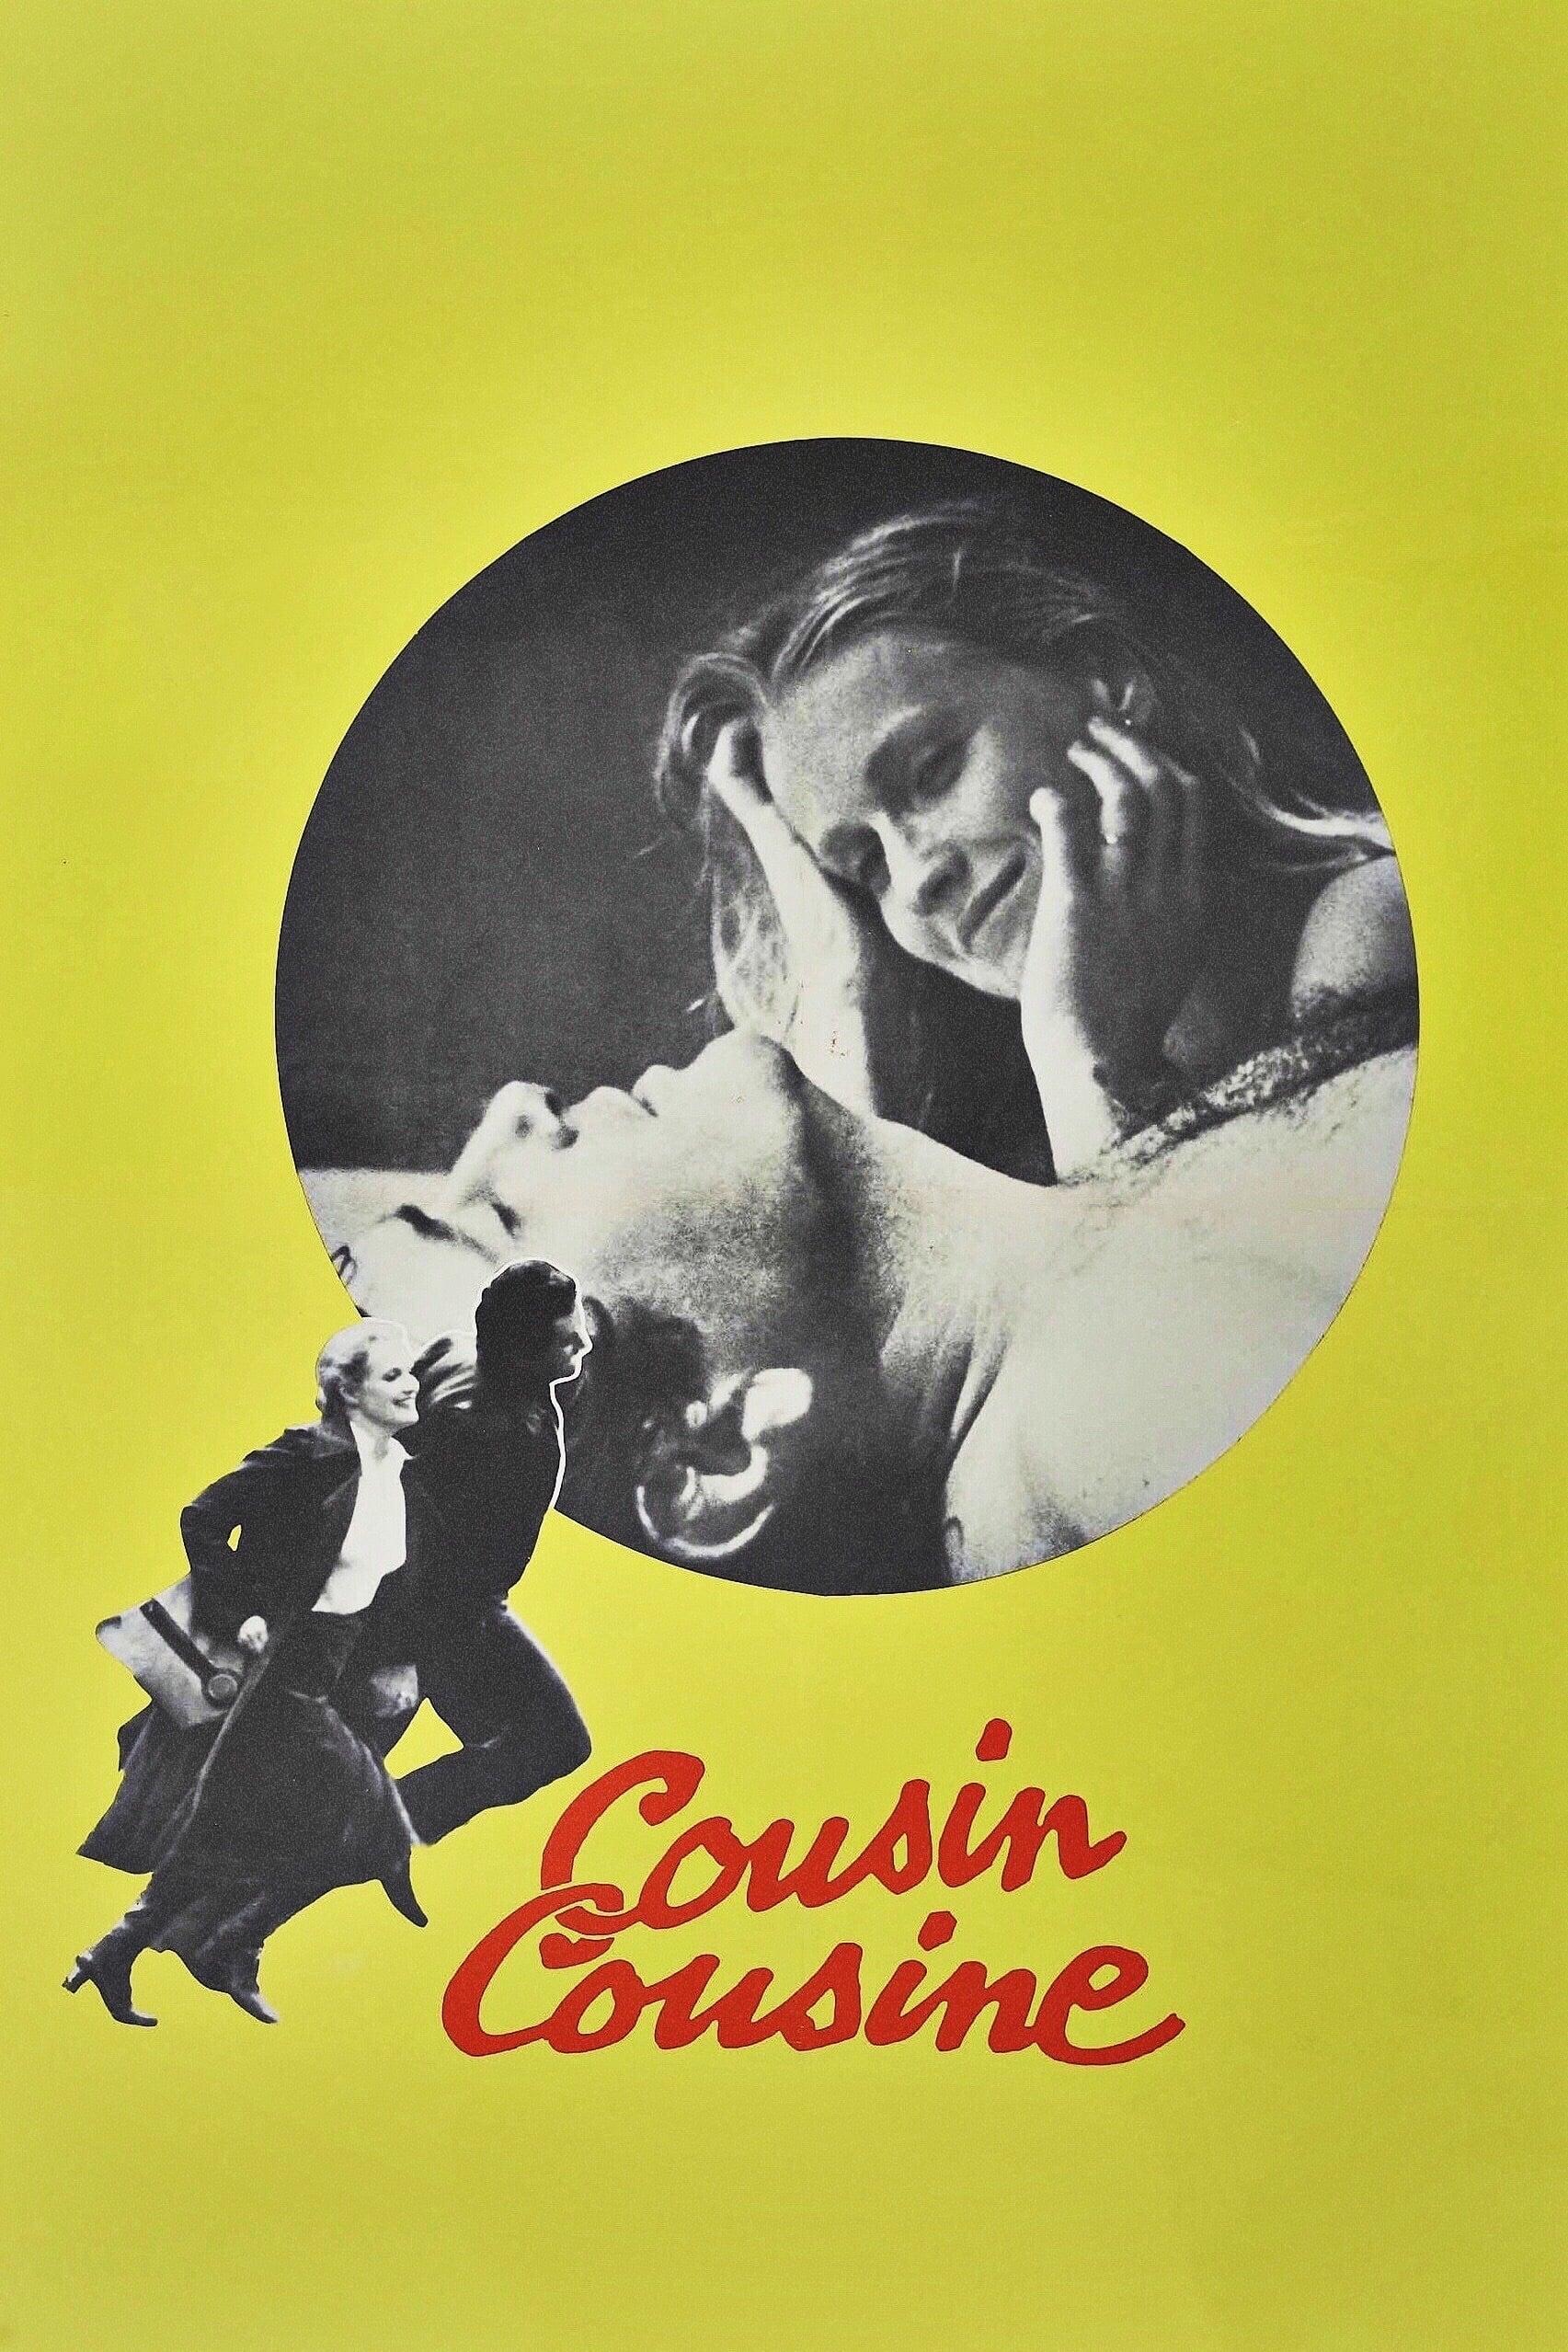 Cousin, Cousine poster